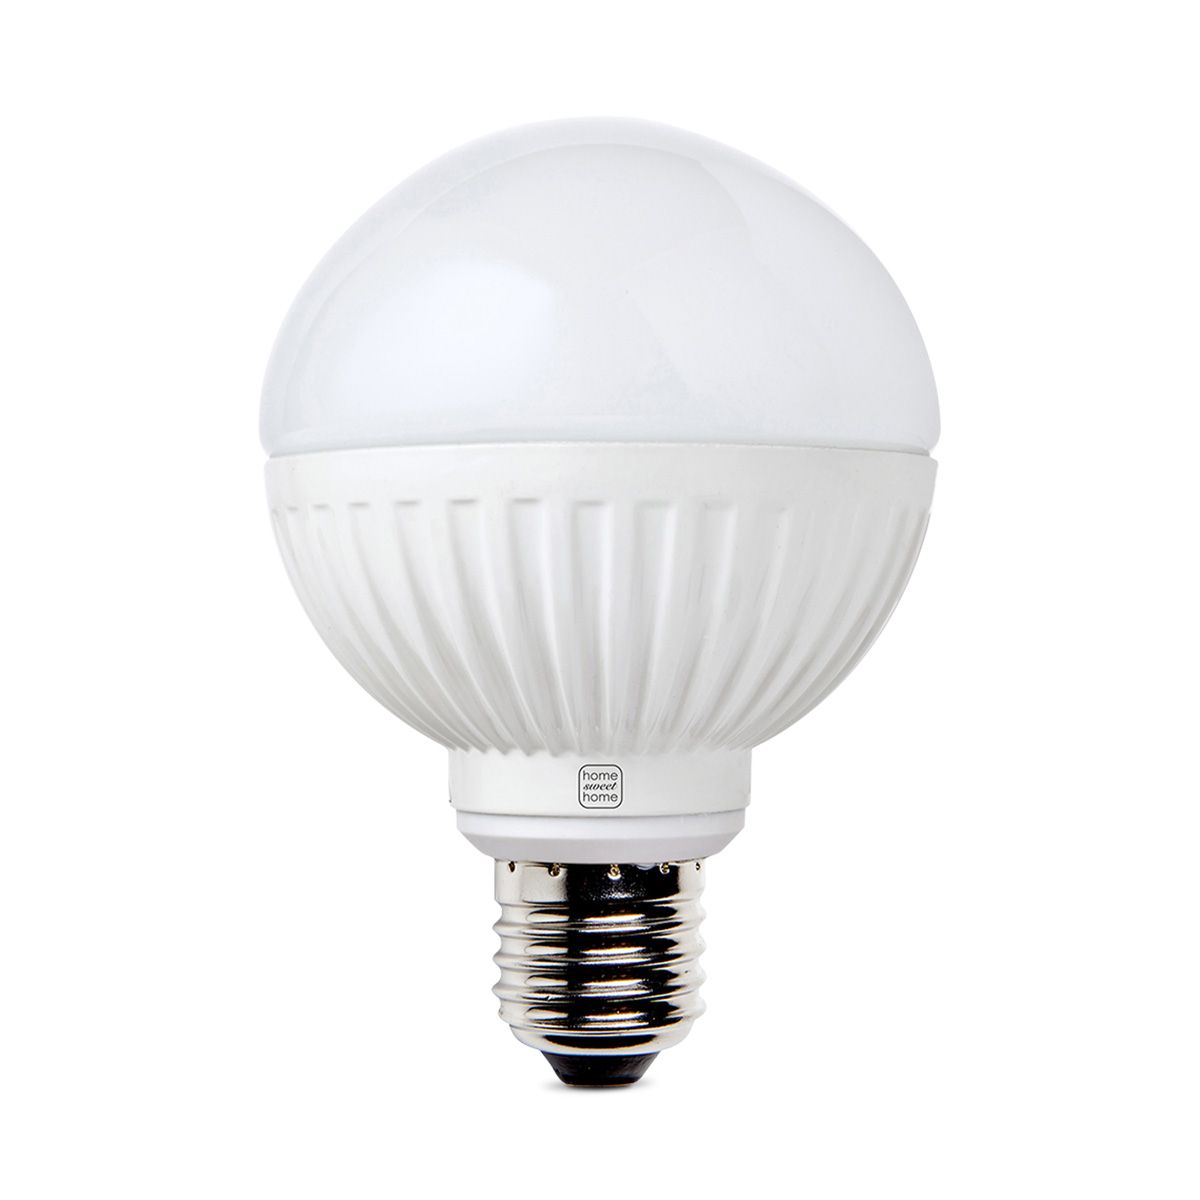 Home sweet home LED lamp Globe G80 E27 9W 600Lm 2700K dimbaar - warmwit